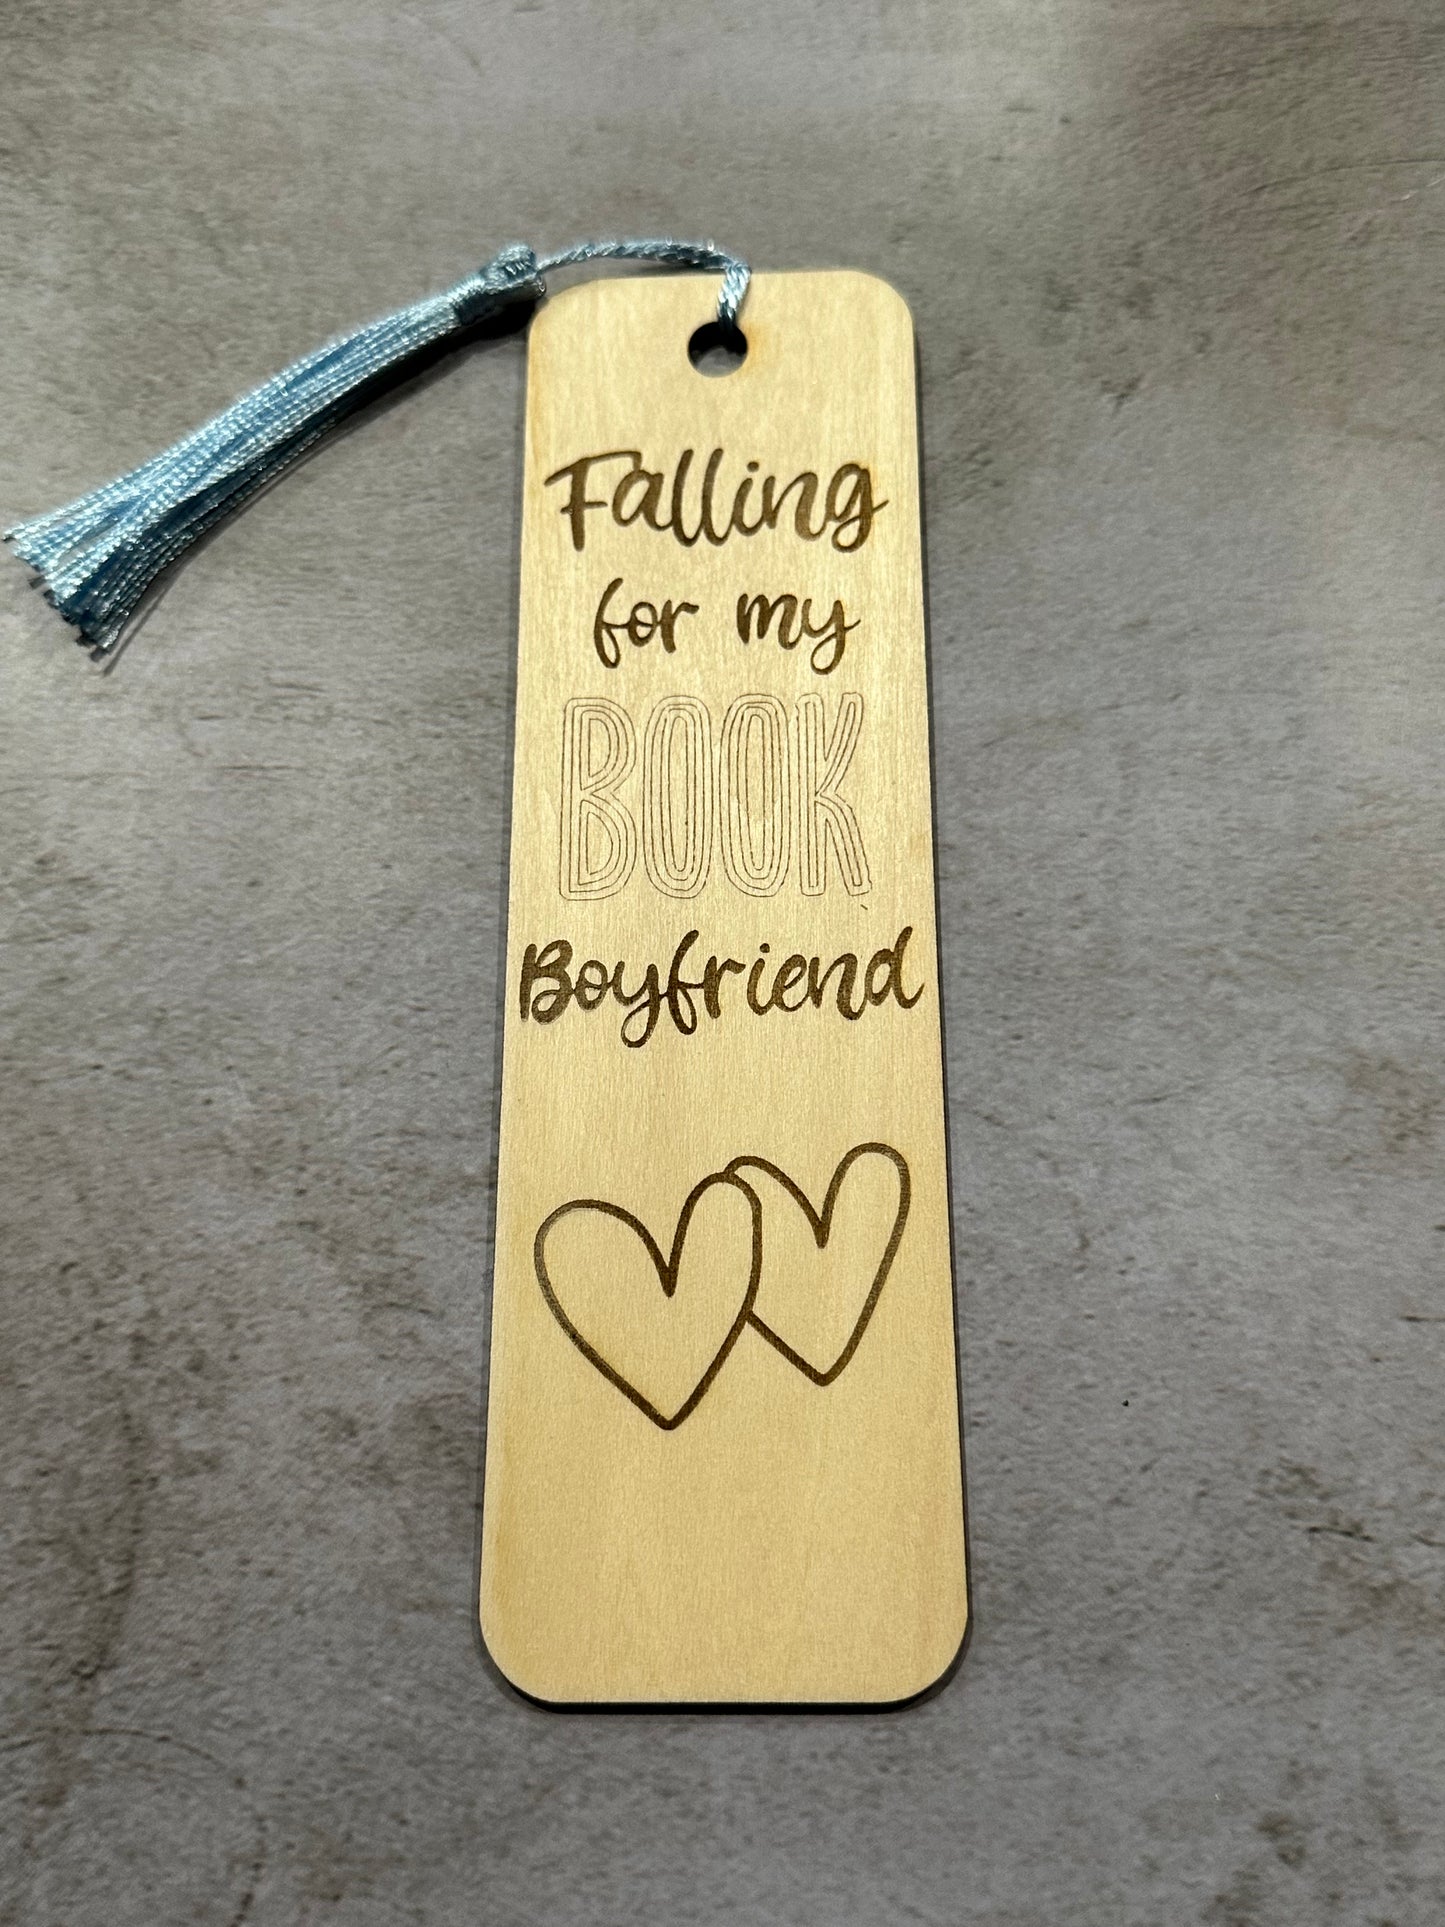 Falling for my book boyfriend